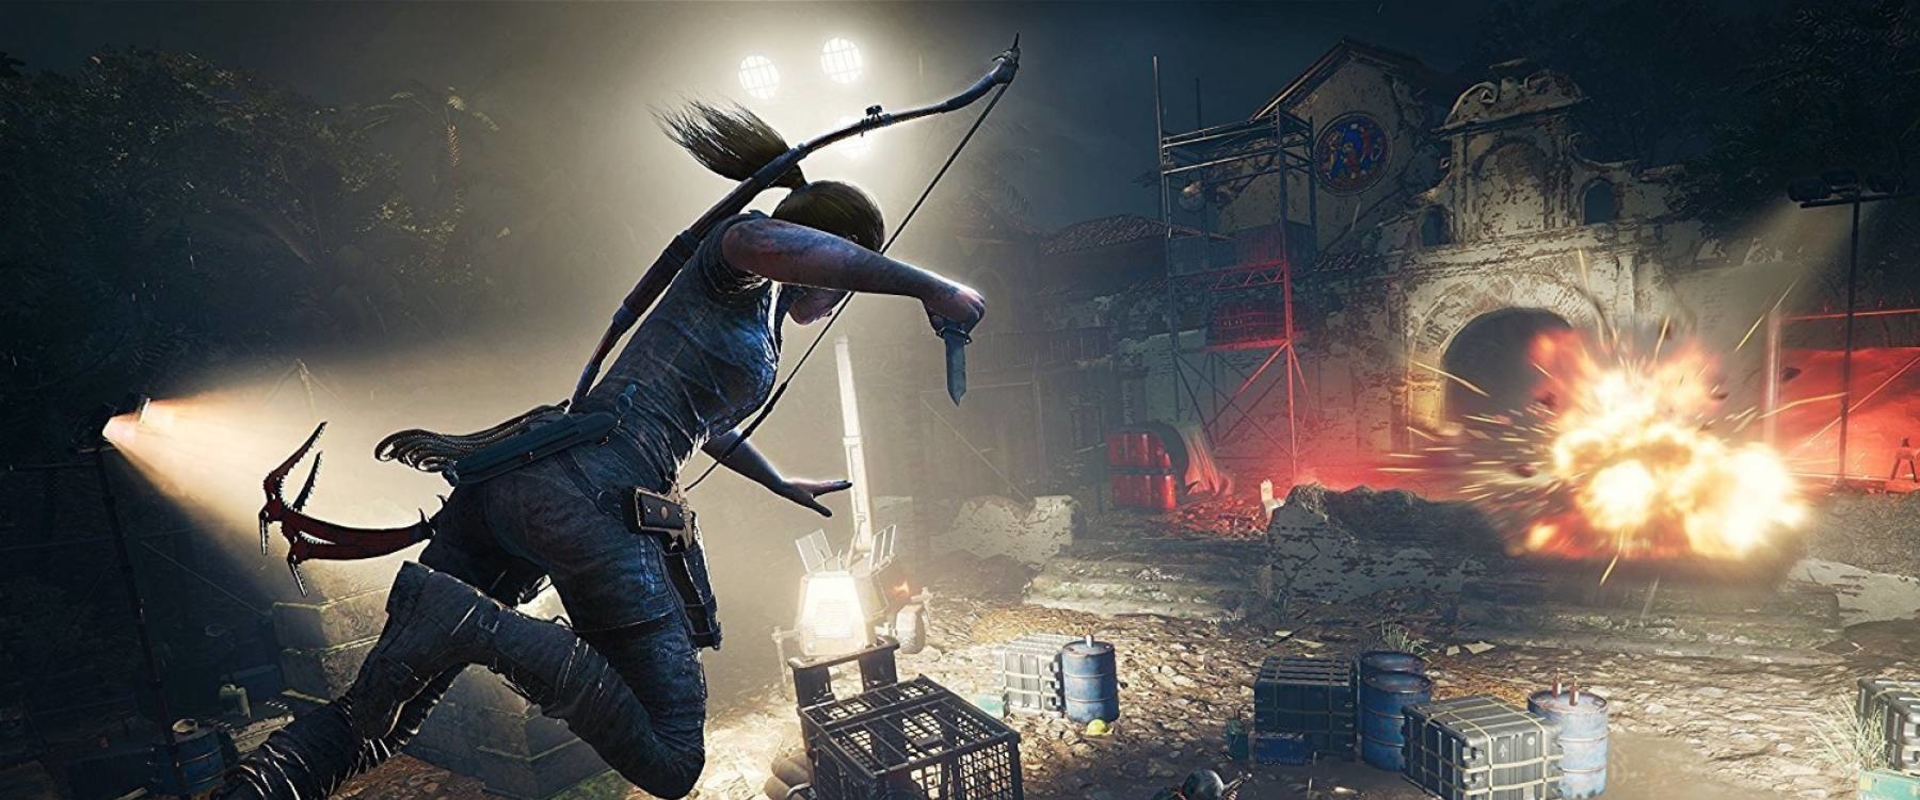 Lassan csorognak az információk a Shadow of the Tomb Raiderrel kapcsolatban